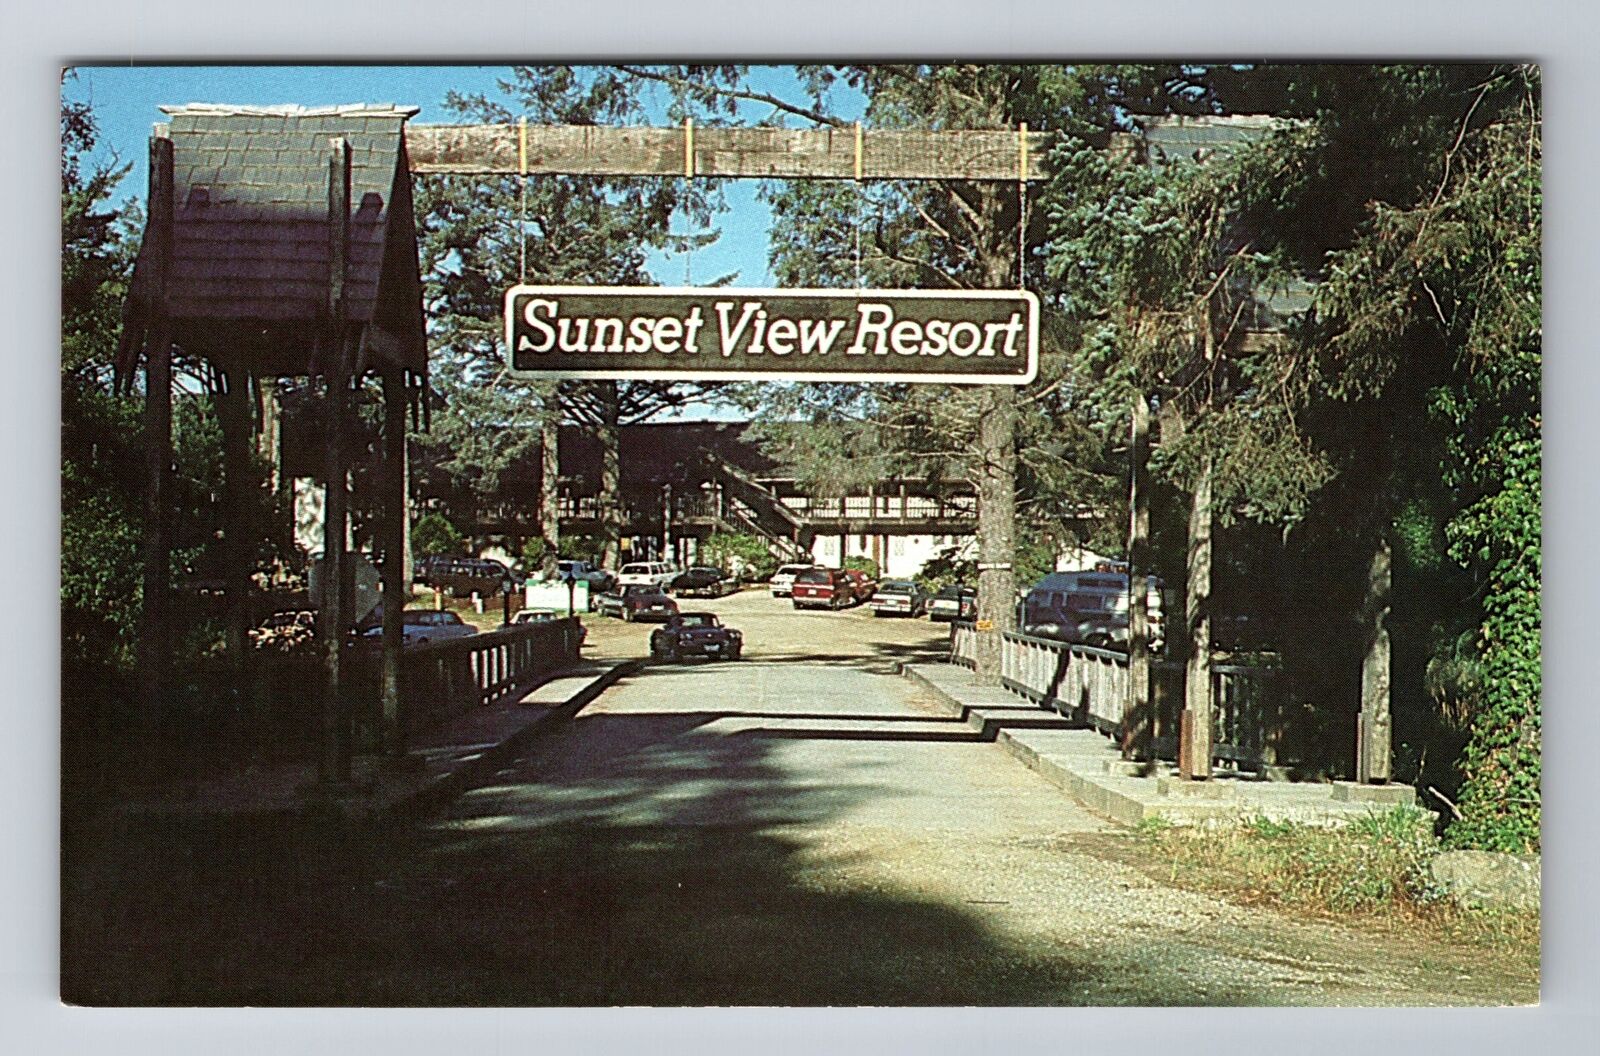 Ocean Park WA-Washington, Sunset View Resort Motel, Advertising Vintage Postcard